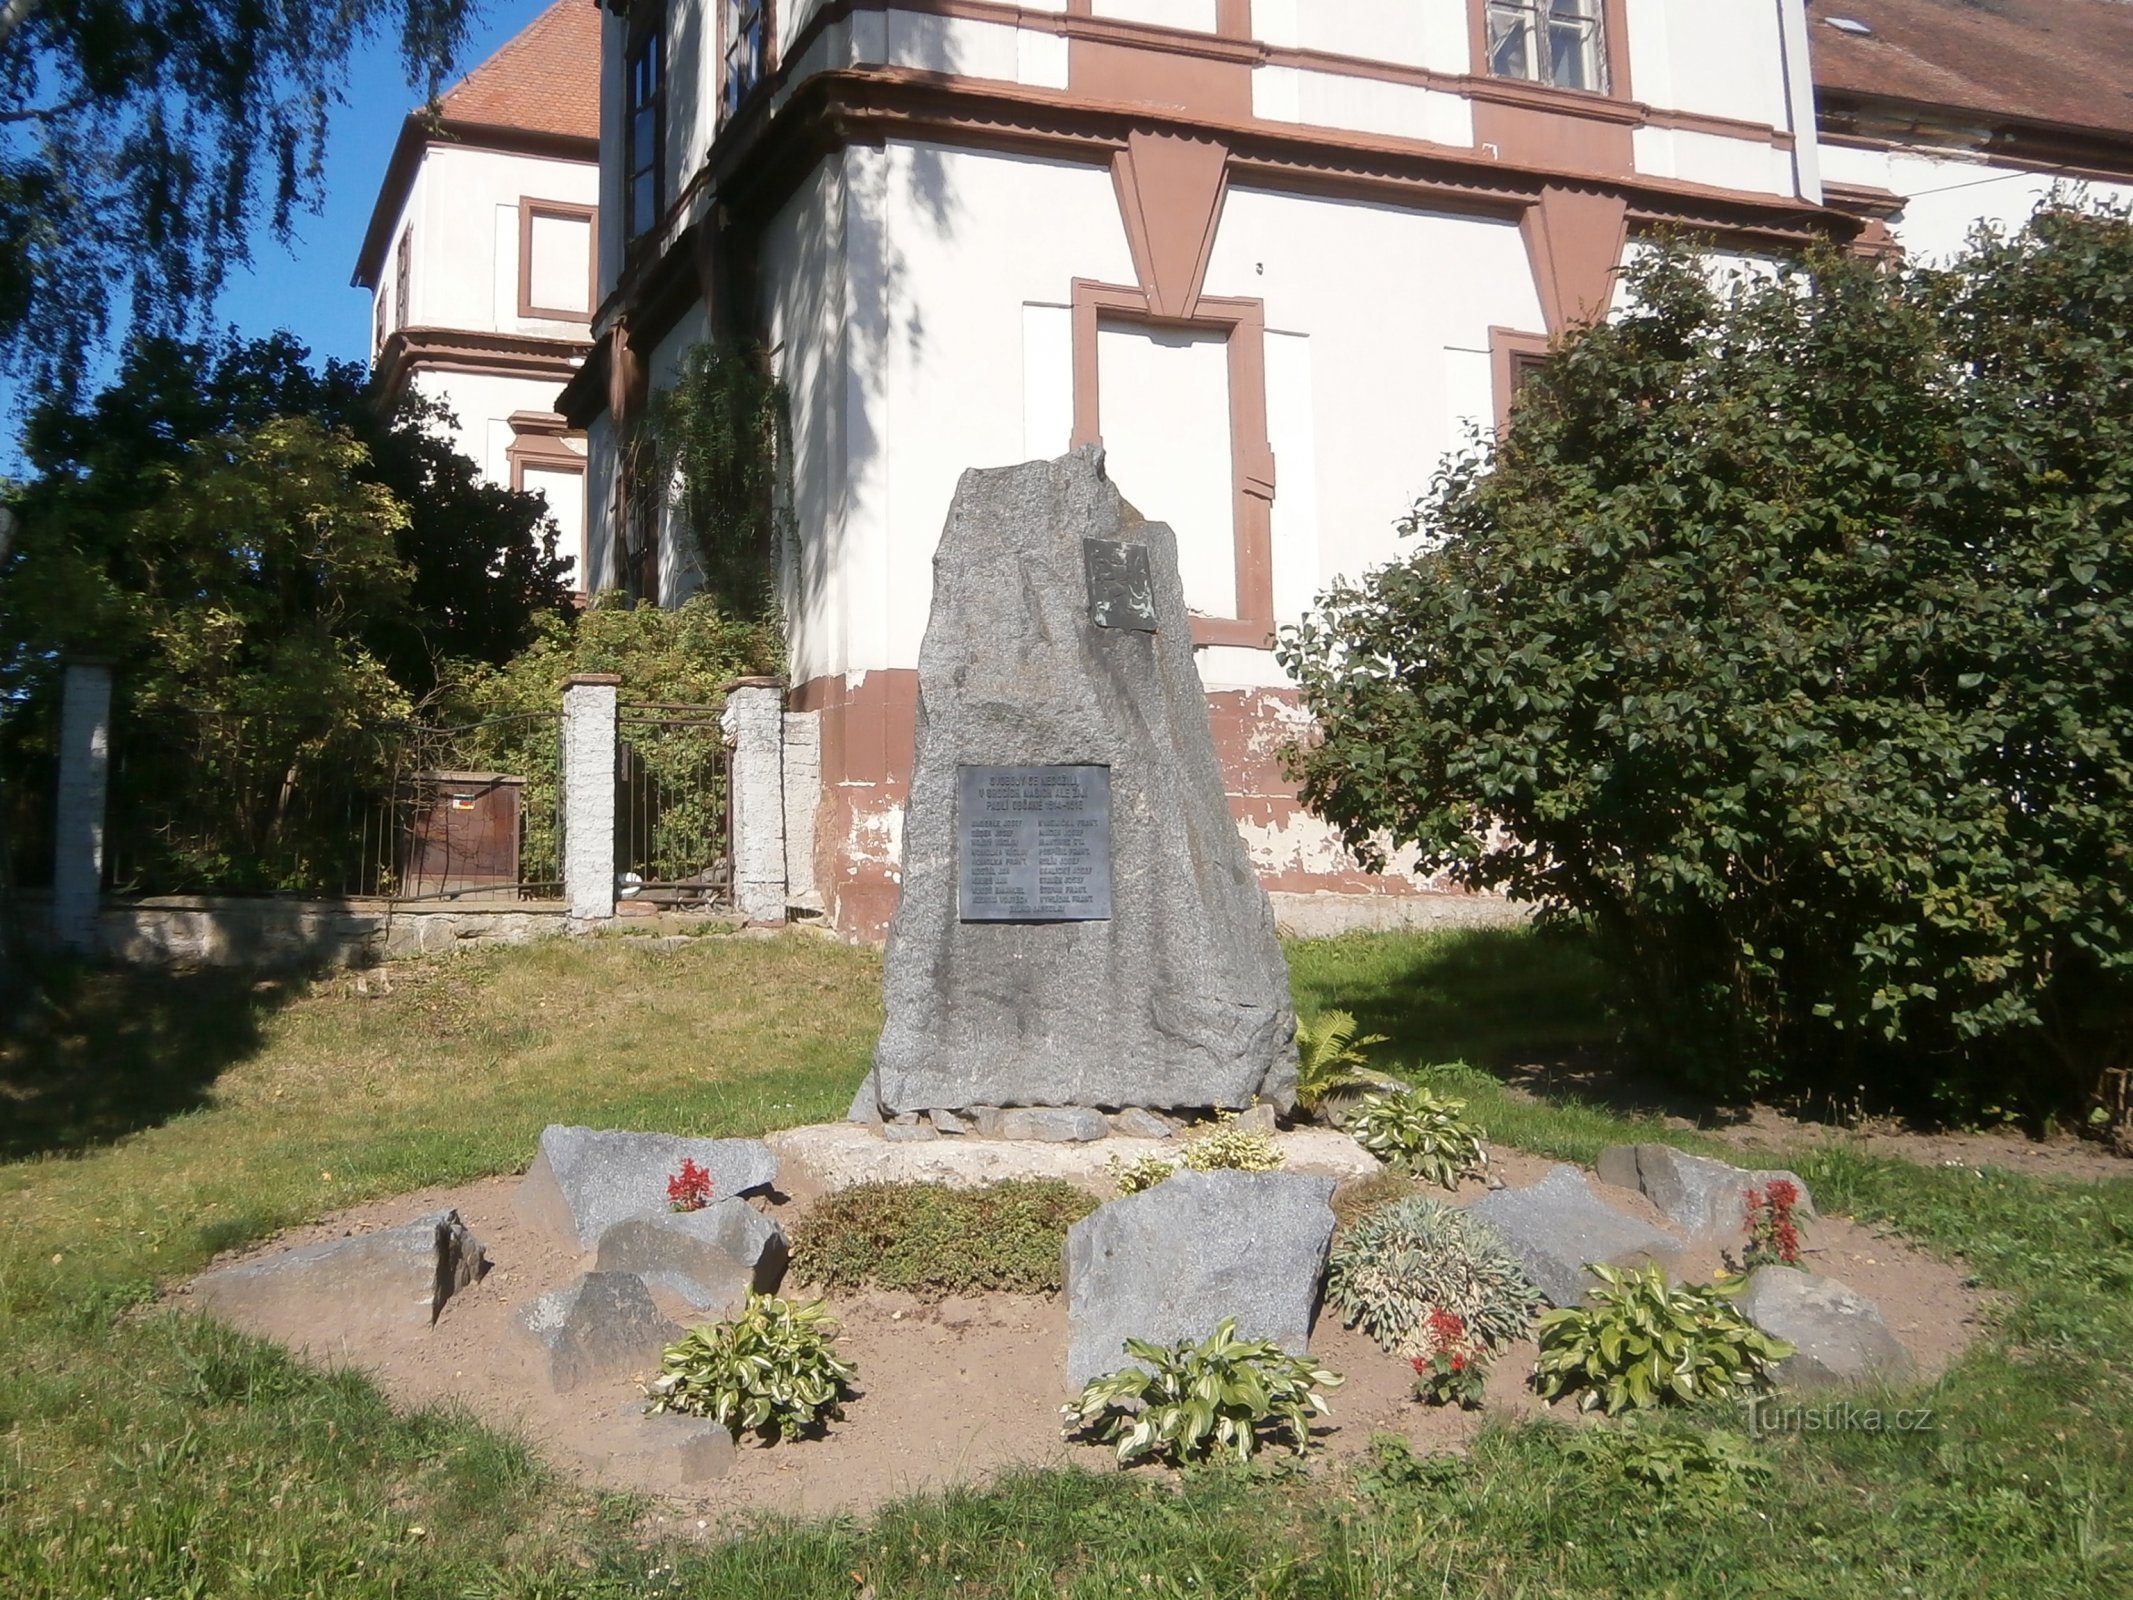 Monumentul celor care au murit în Primul Război Mondial (Hořiněves)